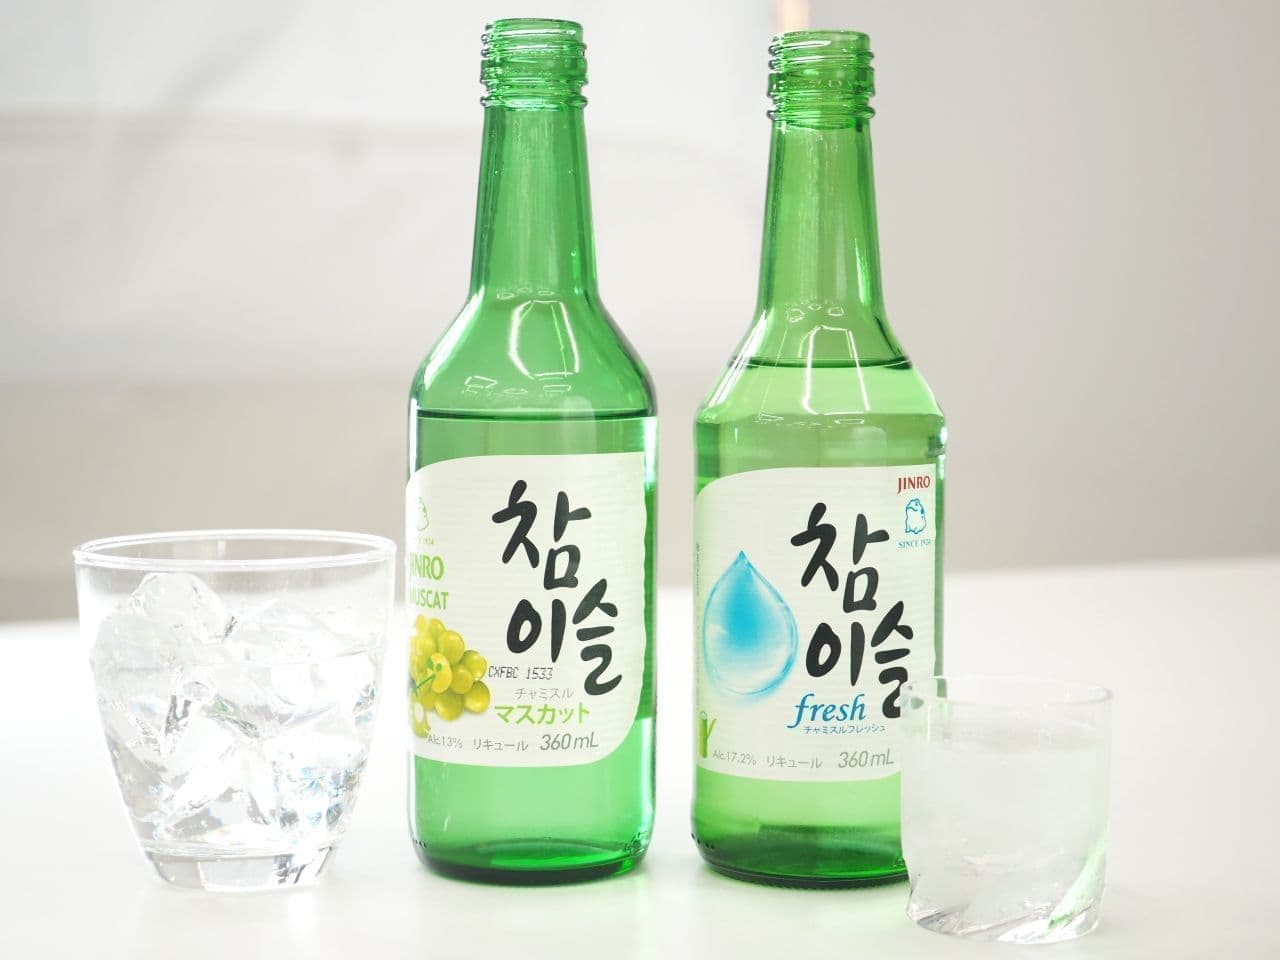 世界で愛飲される韓国のお酒 チャミスル はなぜ人気 おいしい飲み方 味のラインナップをチェック えん食べ